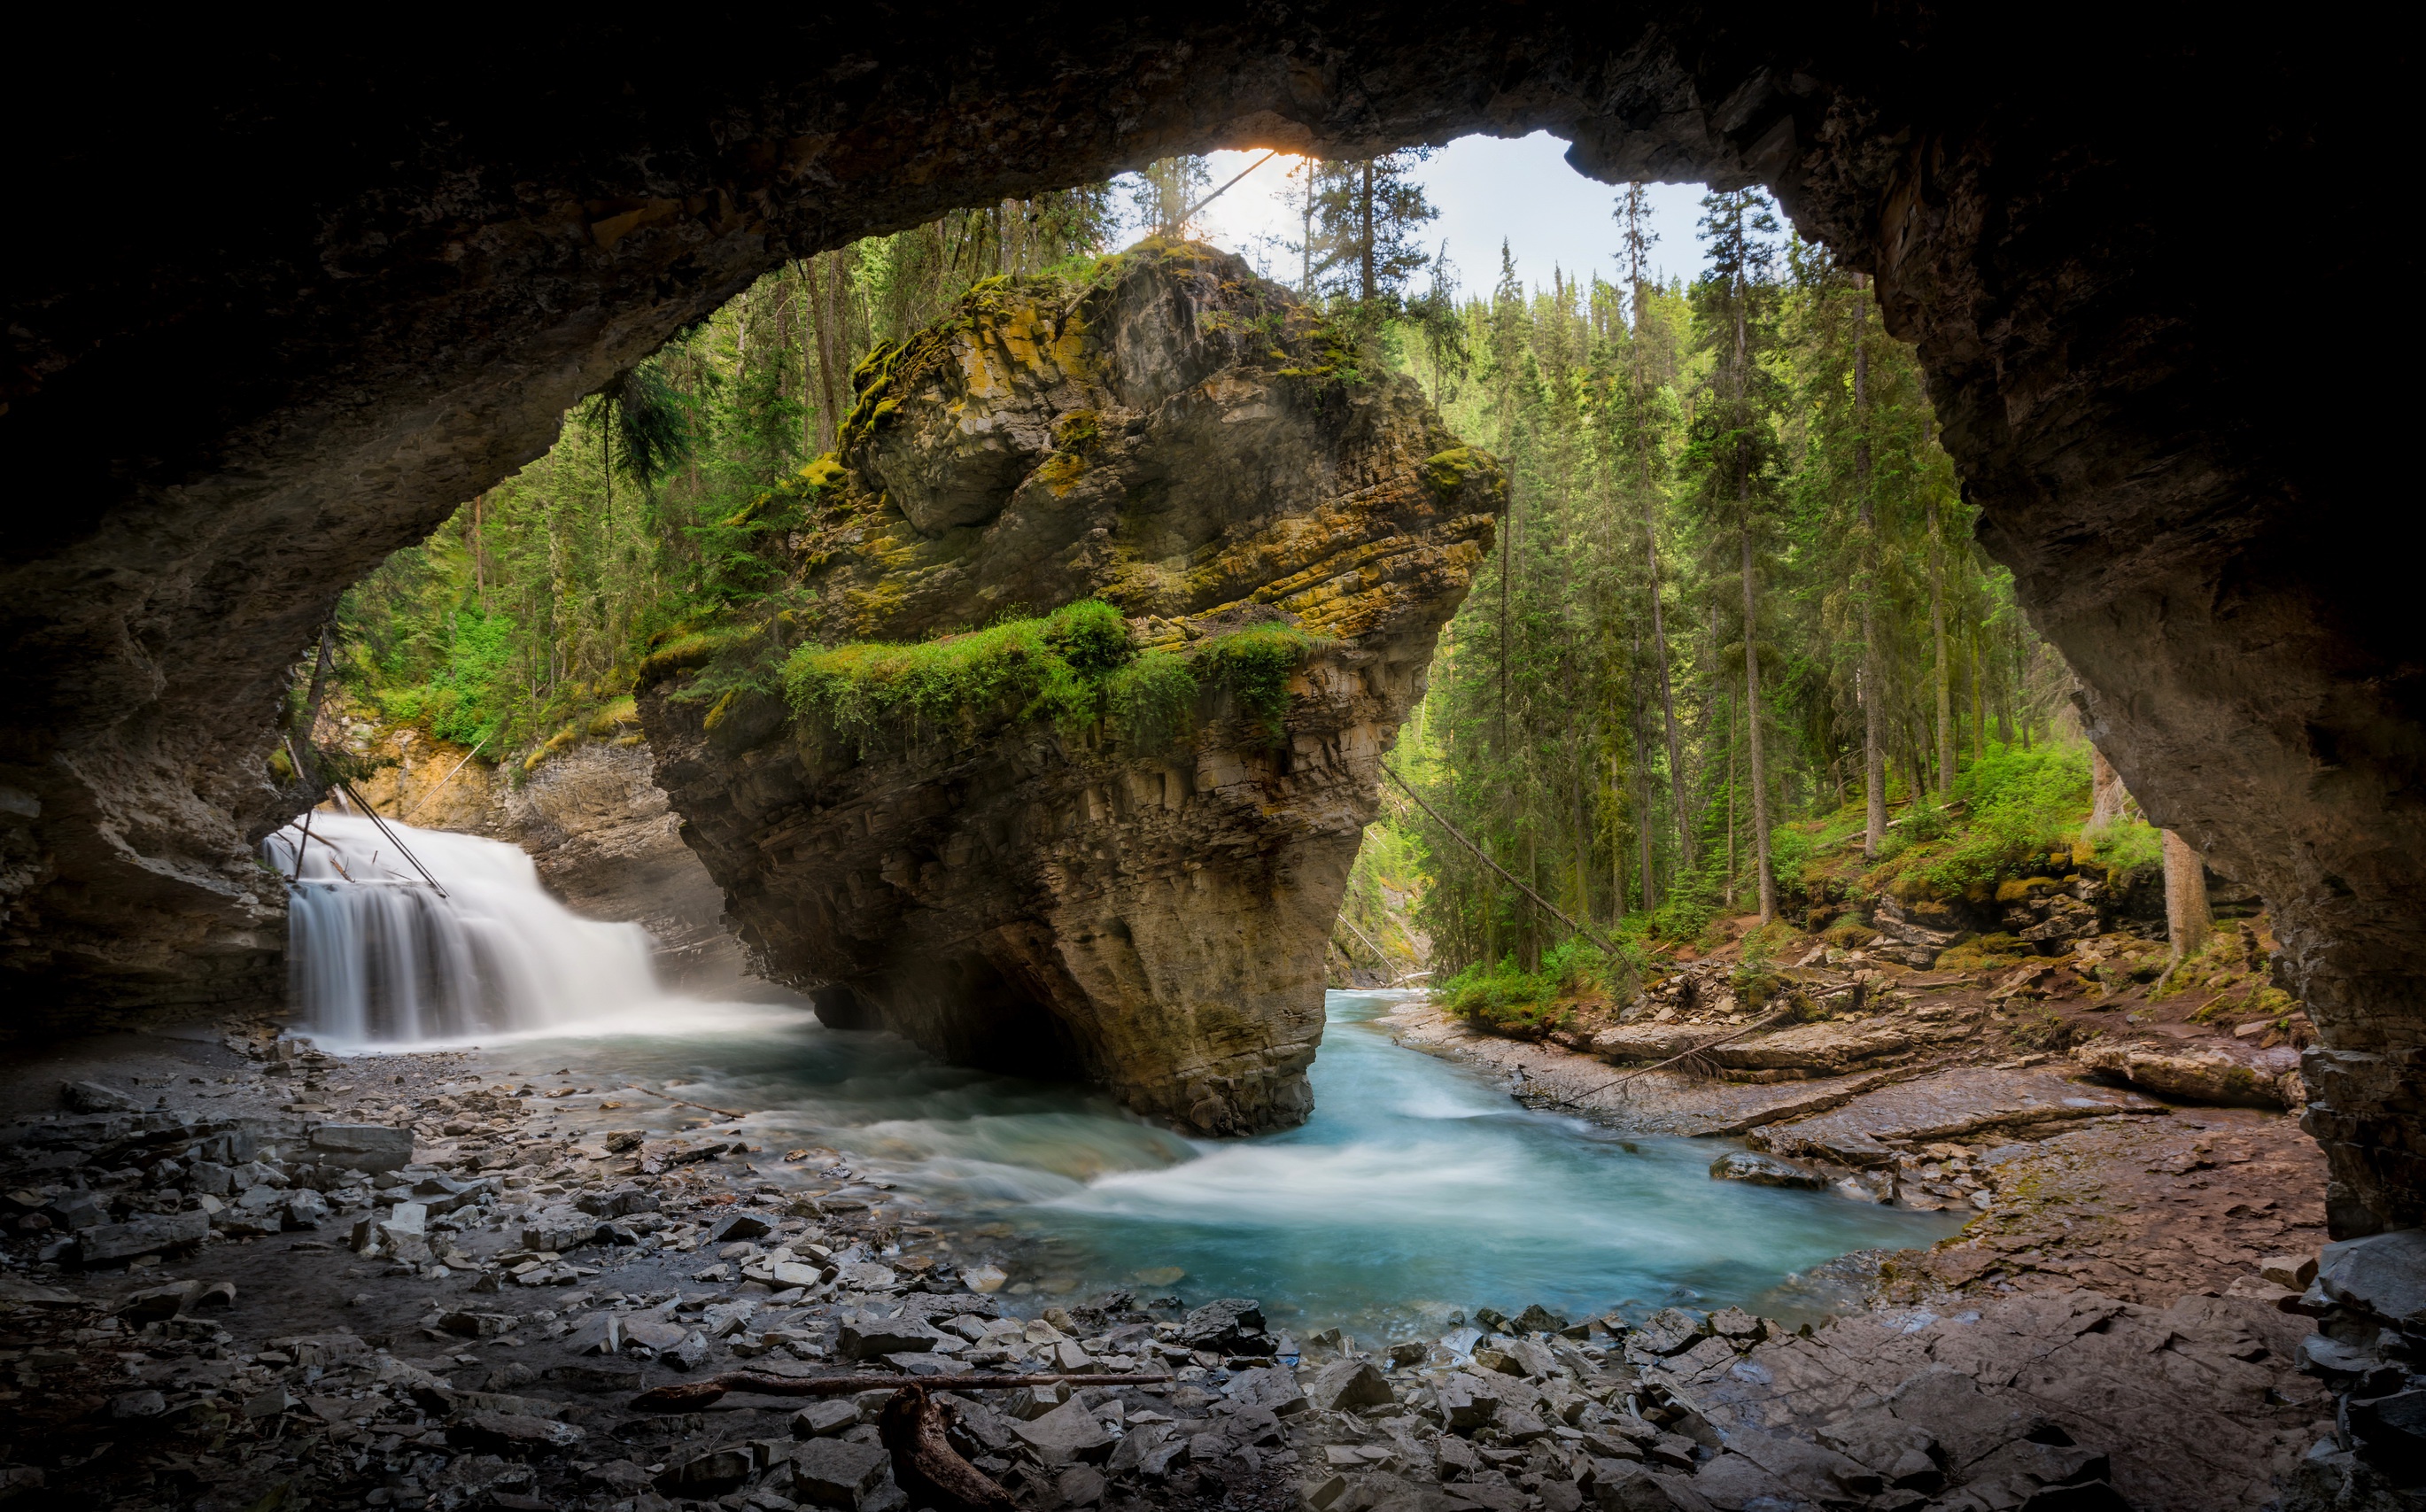 Грот с водопадом в пещере